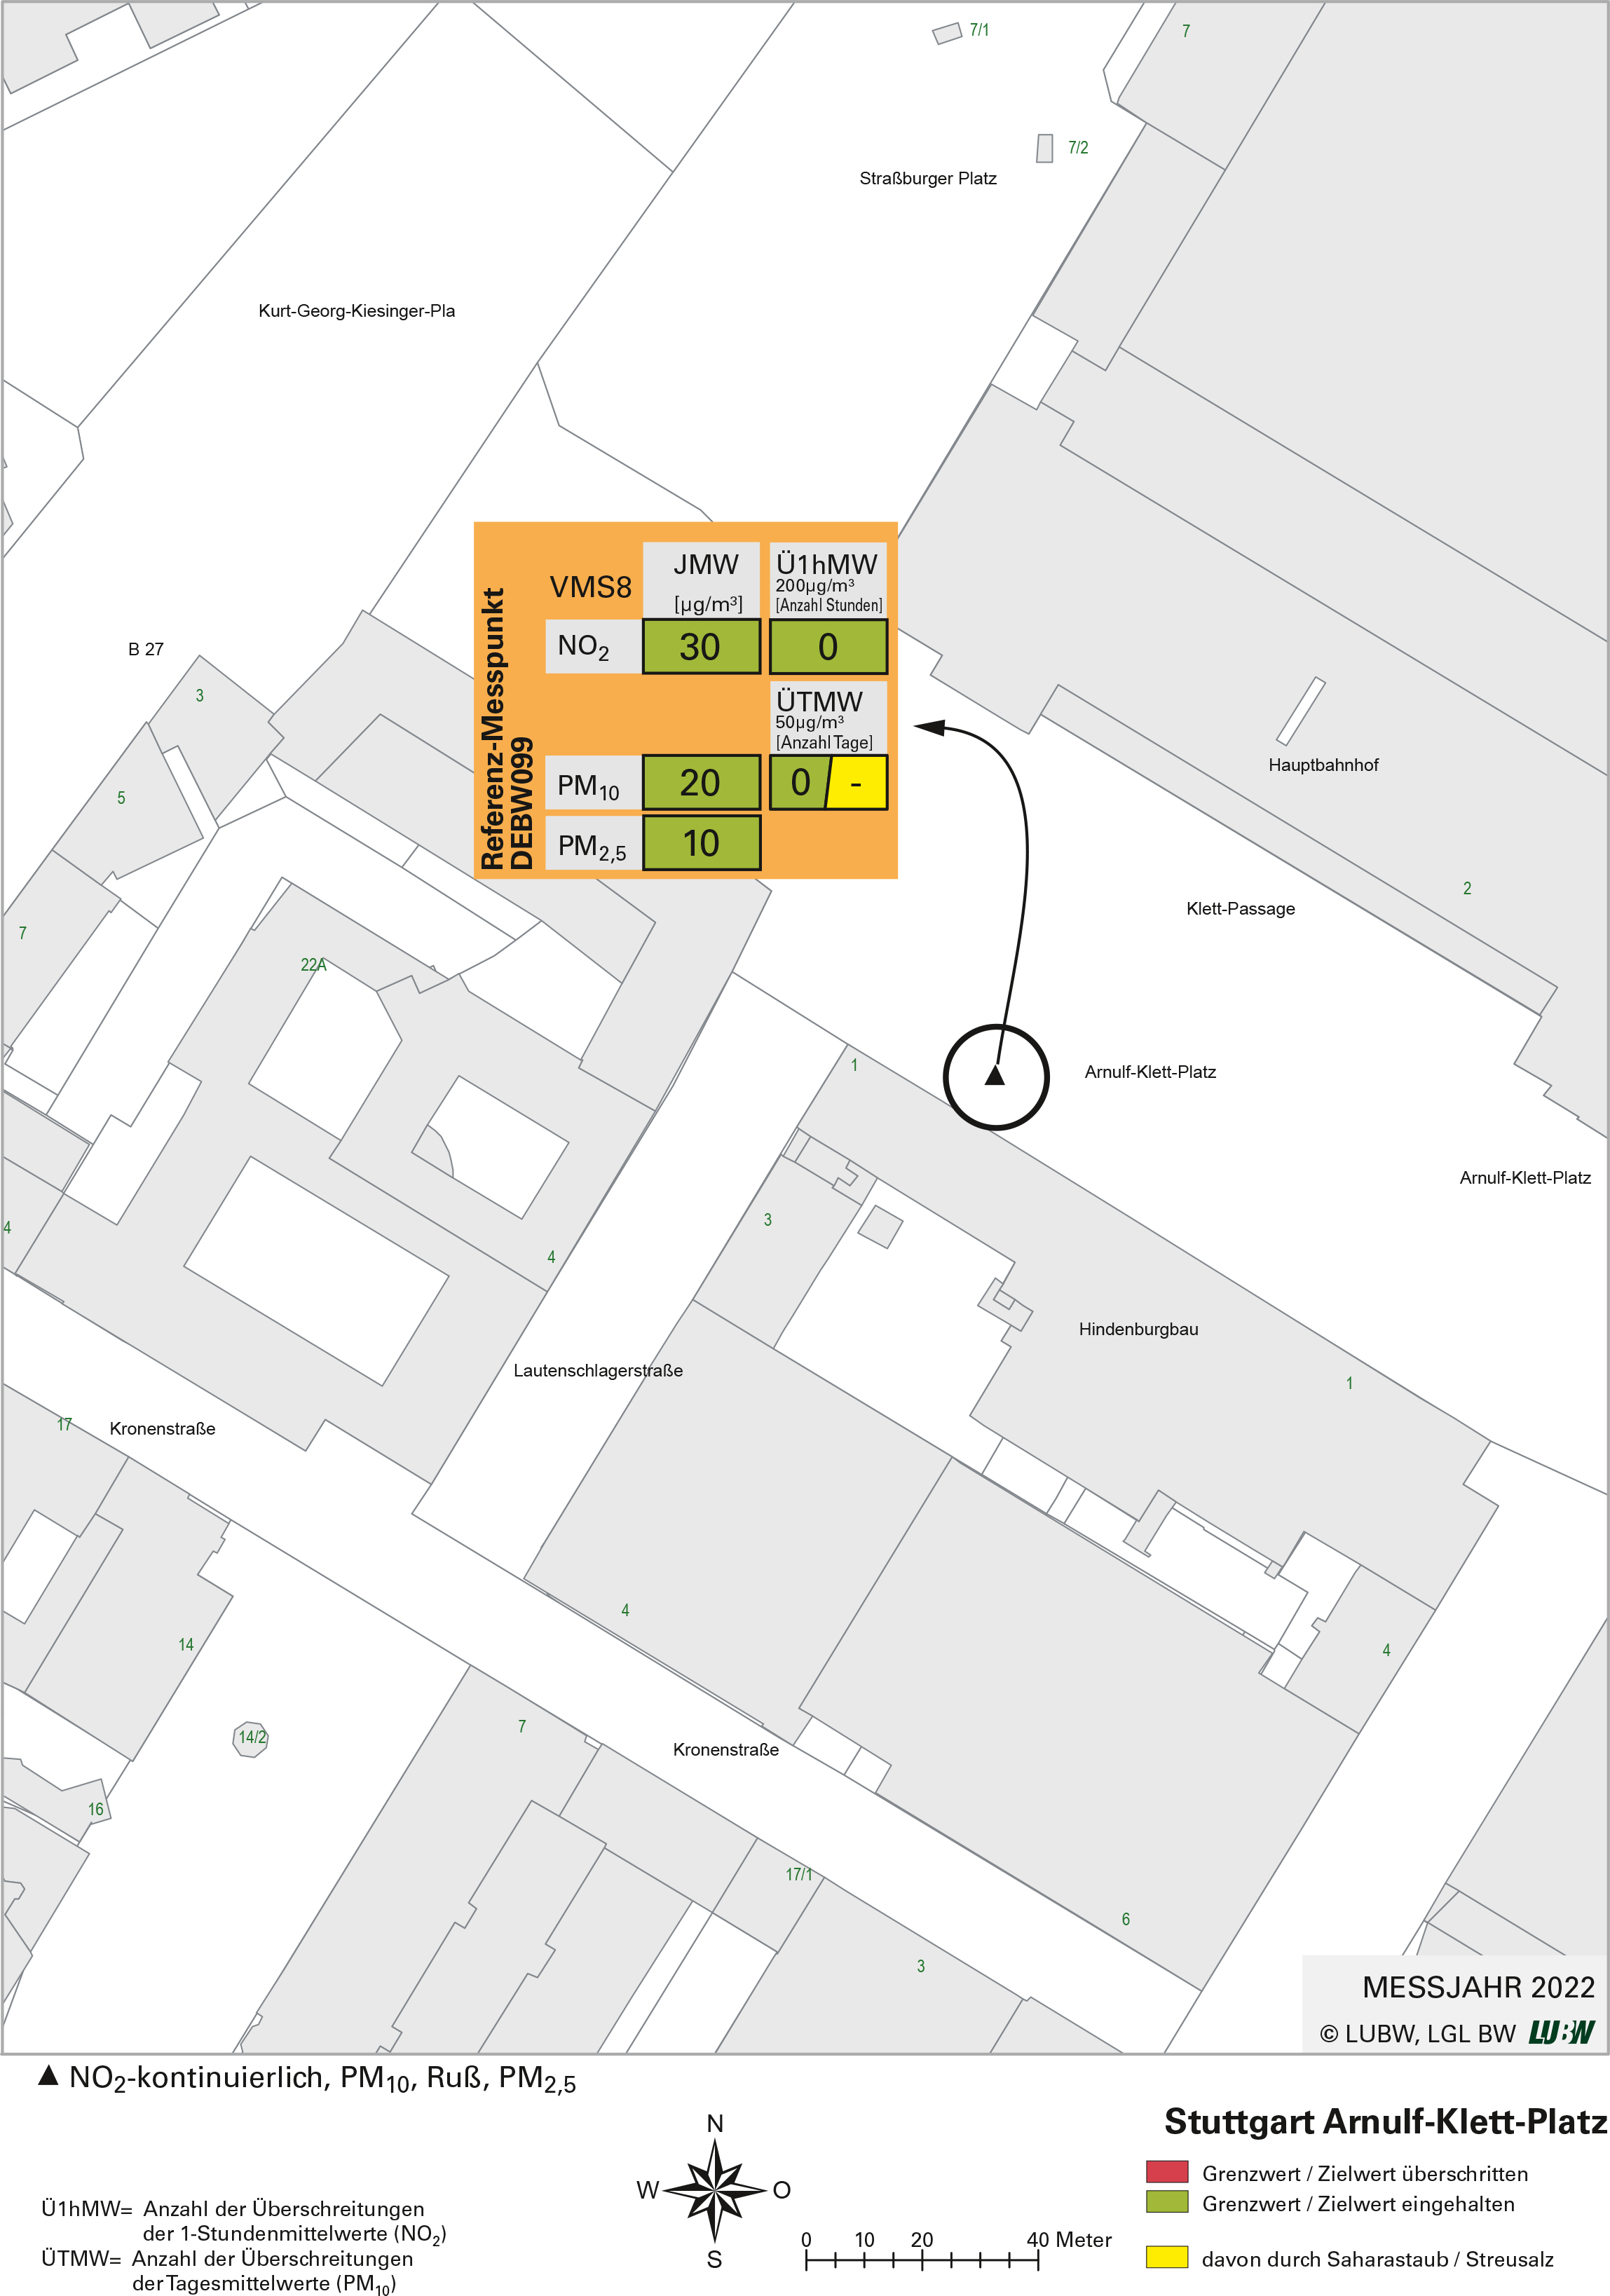 Kartenausschnitt, der die Lage der Messstelle Stuttgart Arnulf-Klett-Platz (Referenzmesspunkt) zeigt. Dargestellt sind zudem die Ergebnisse (Jahresmittelwerte 2022, Überschreitungen 2022) der gemessenen Belastung durch Stickstoffdioxid, Partikel PM10 und Partikel PM2,5.